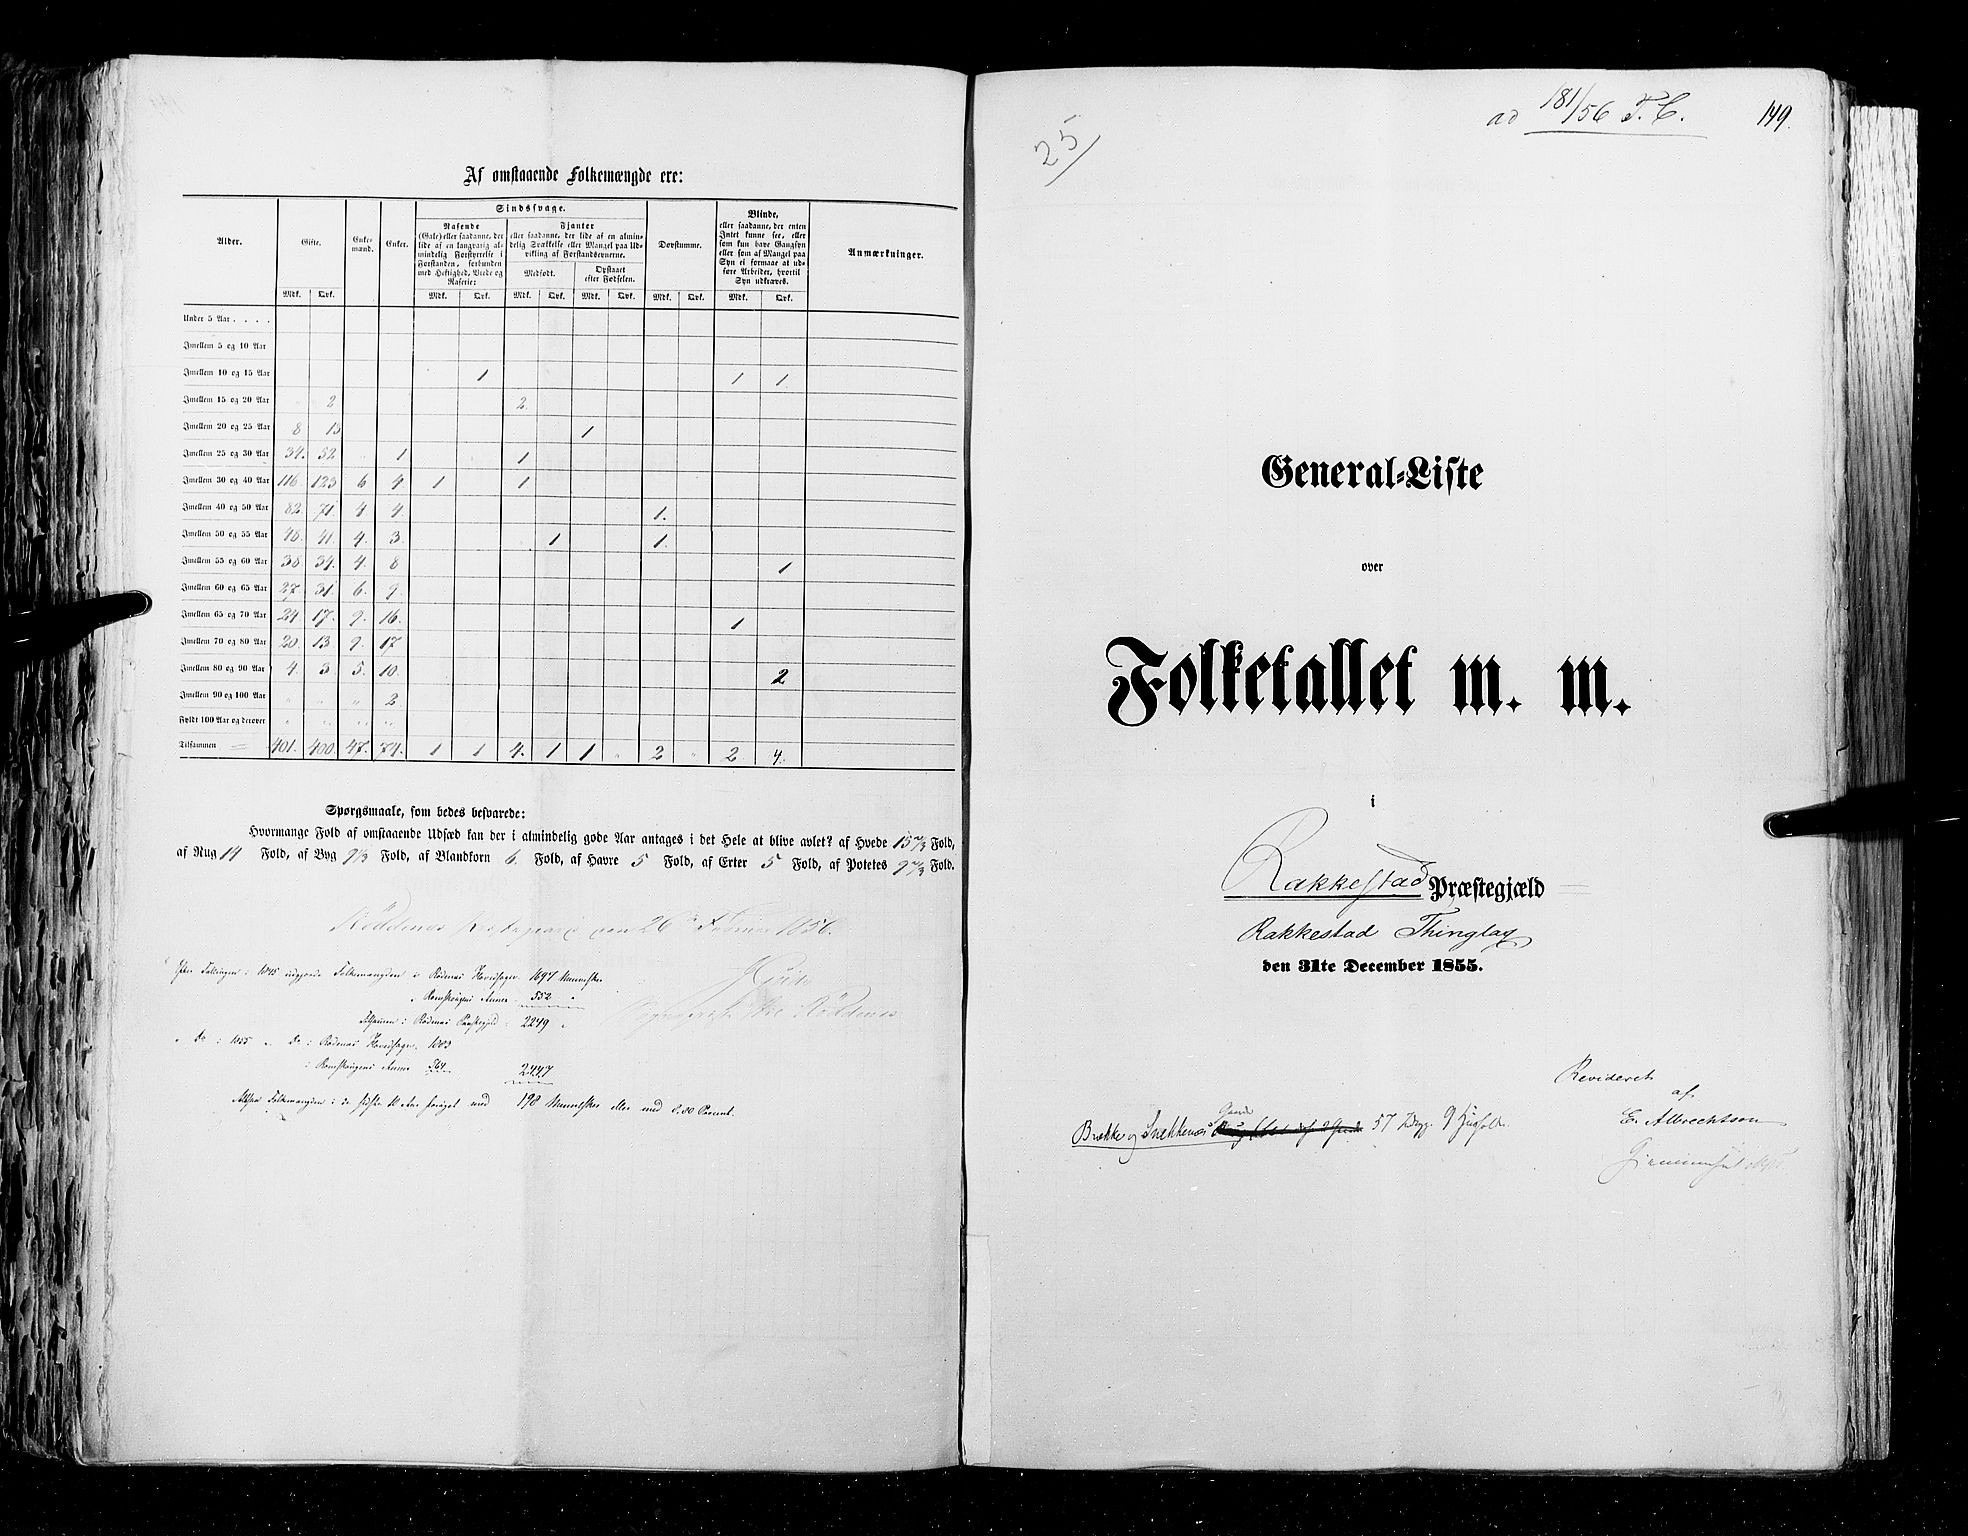 RA, Folketellingen 1855, bind 1: Akershus amt, Smålenenes amt og Hedemarken amt, 1855, s. 149